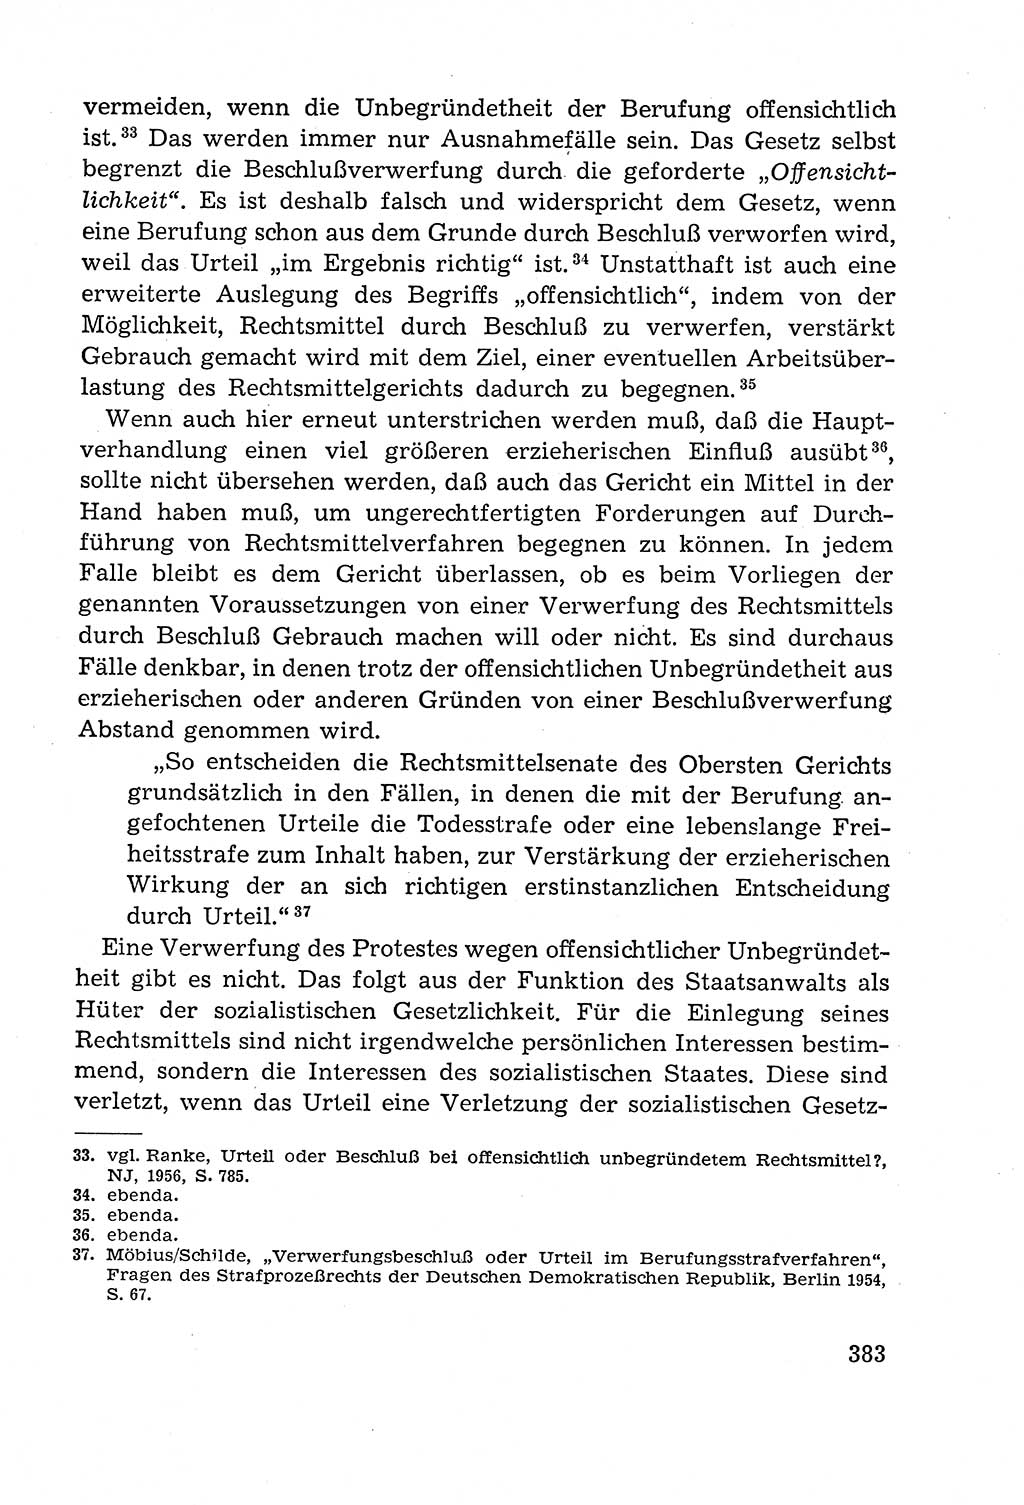 Leitfaden des Strafprozeßrechts der Deutschen Demokratischen Republik (DDR) 1959, Seite 383 (LF StPR DDR 1959, S. 383)